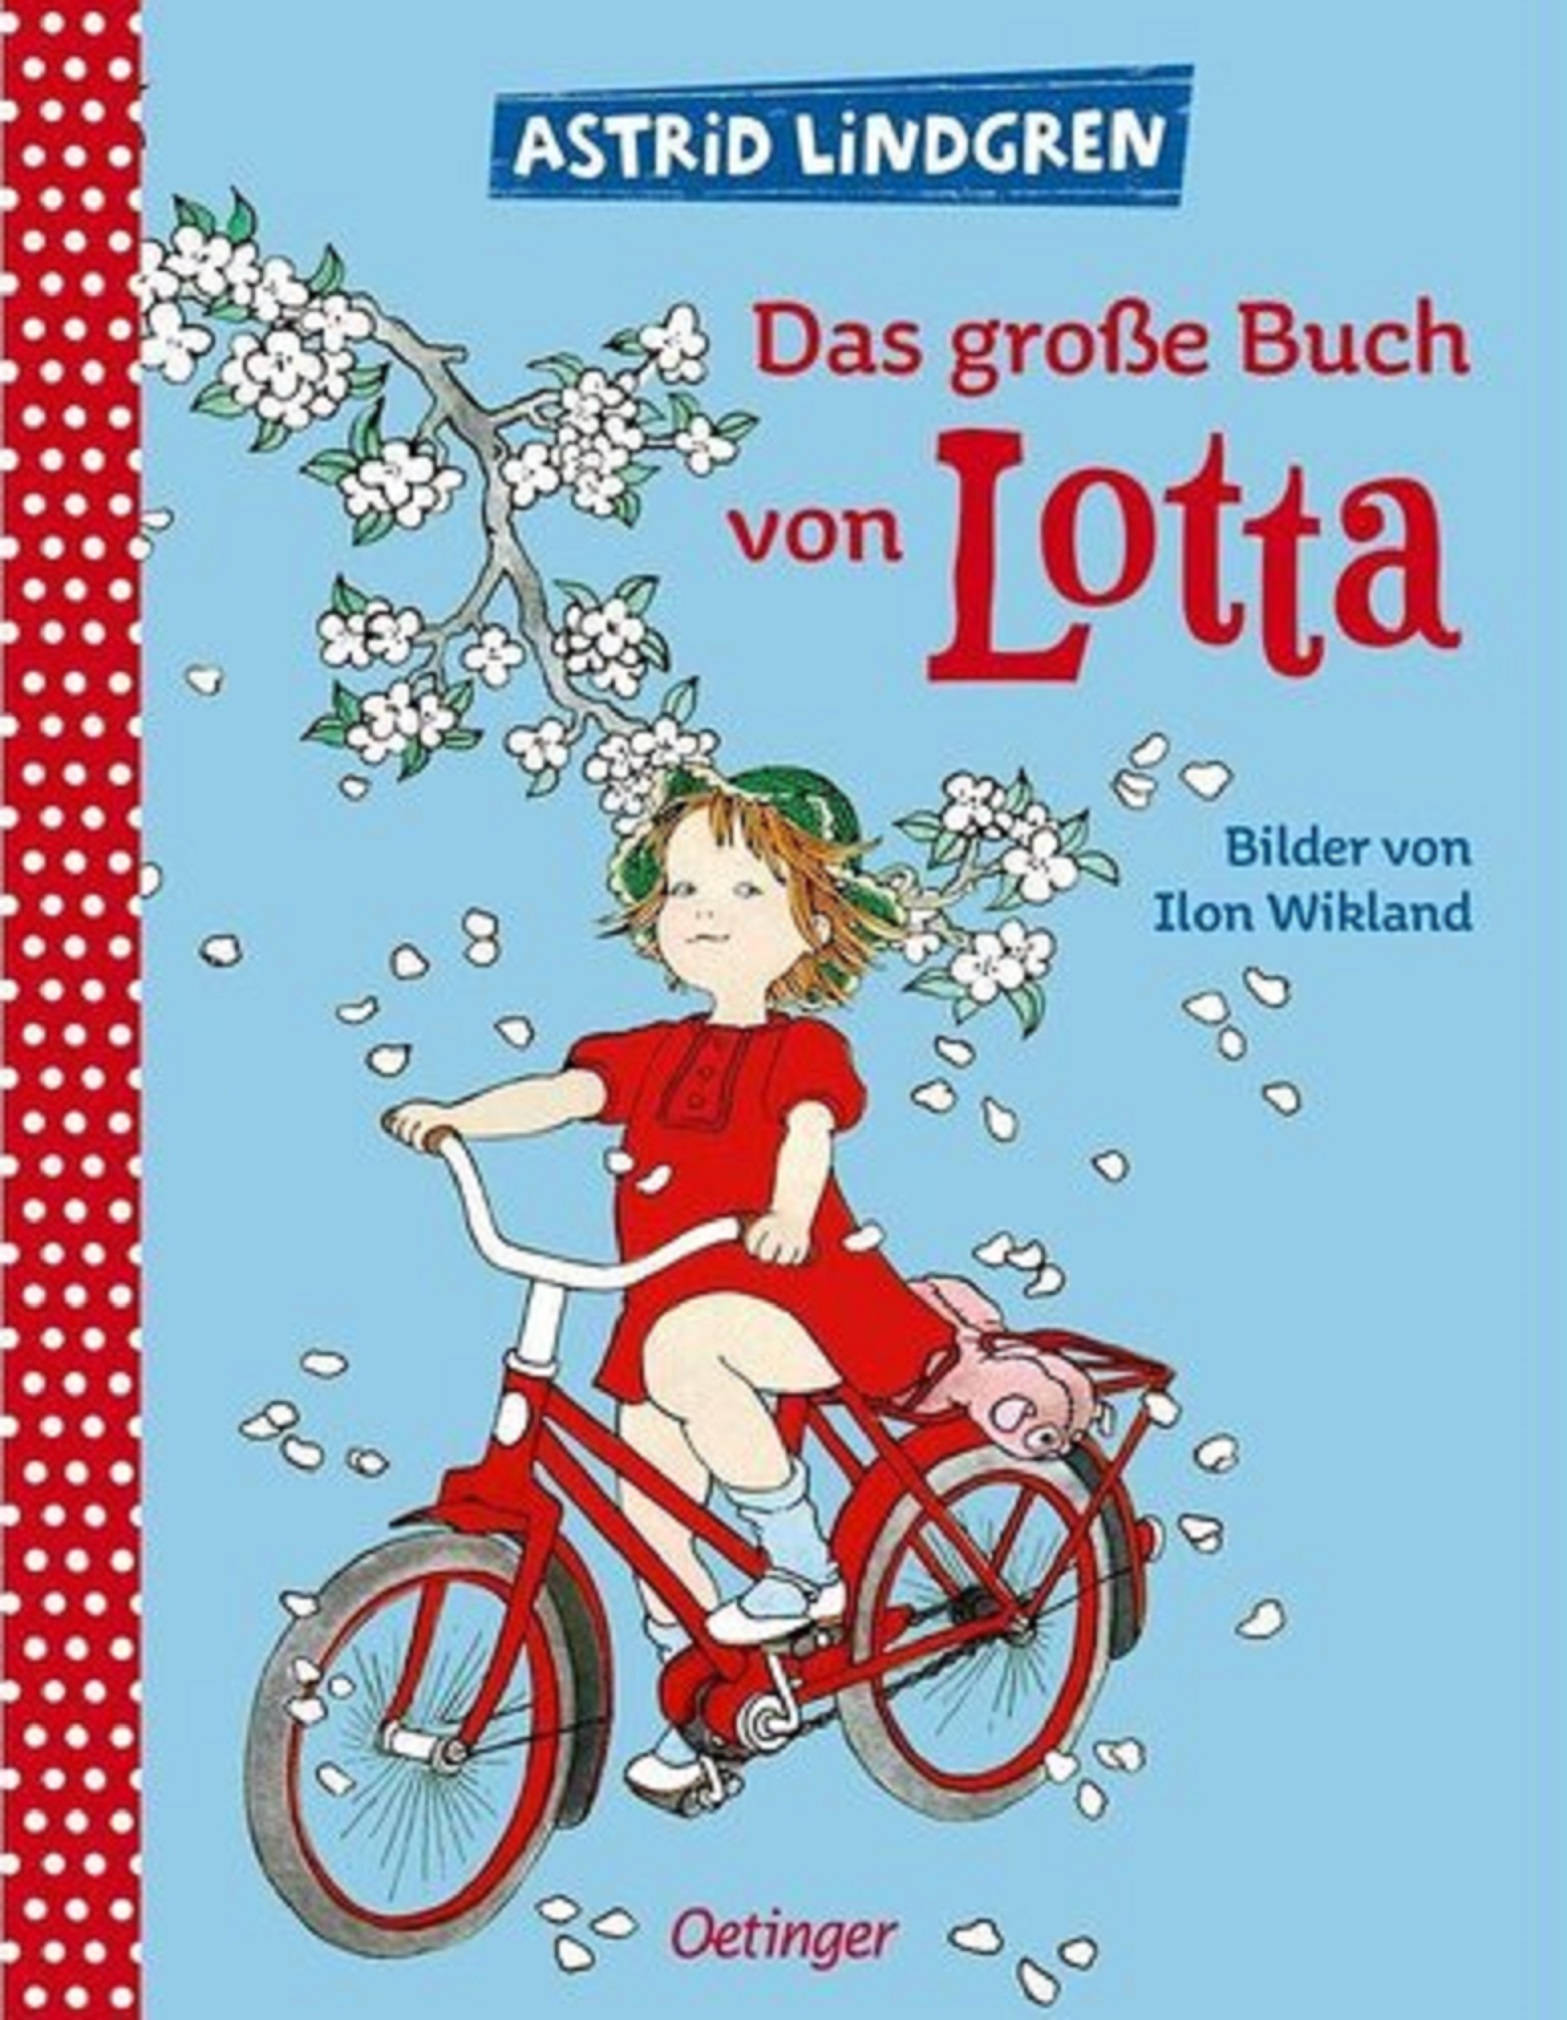  Das große Buch von Lotta | Astrid Lindgren